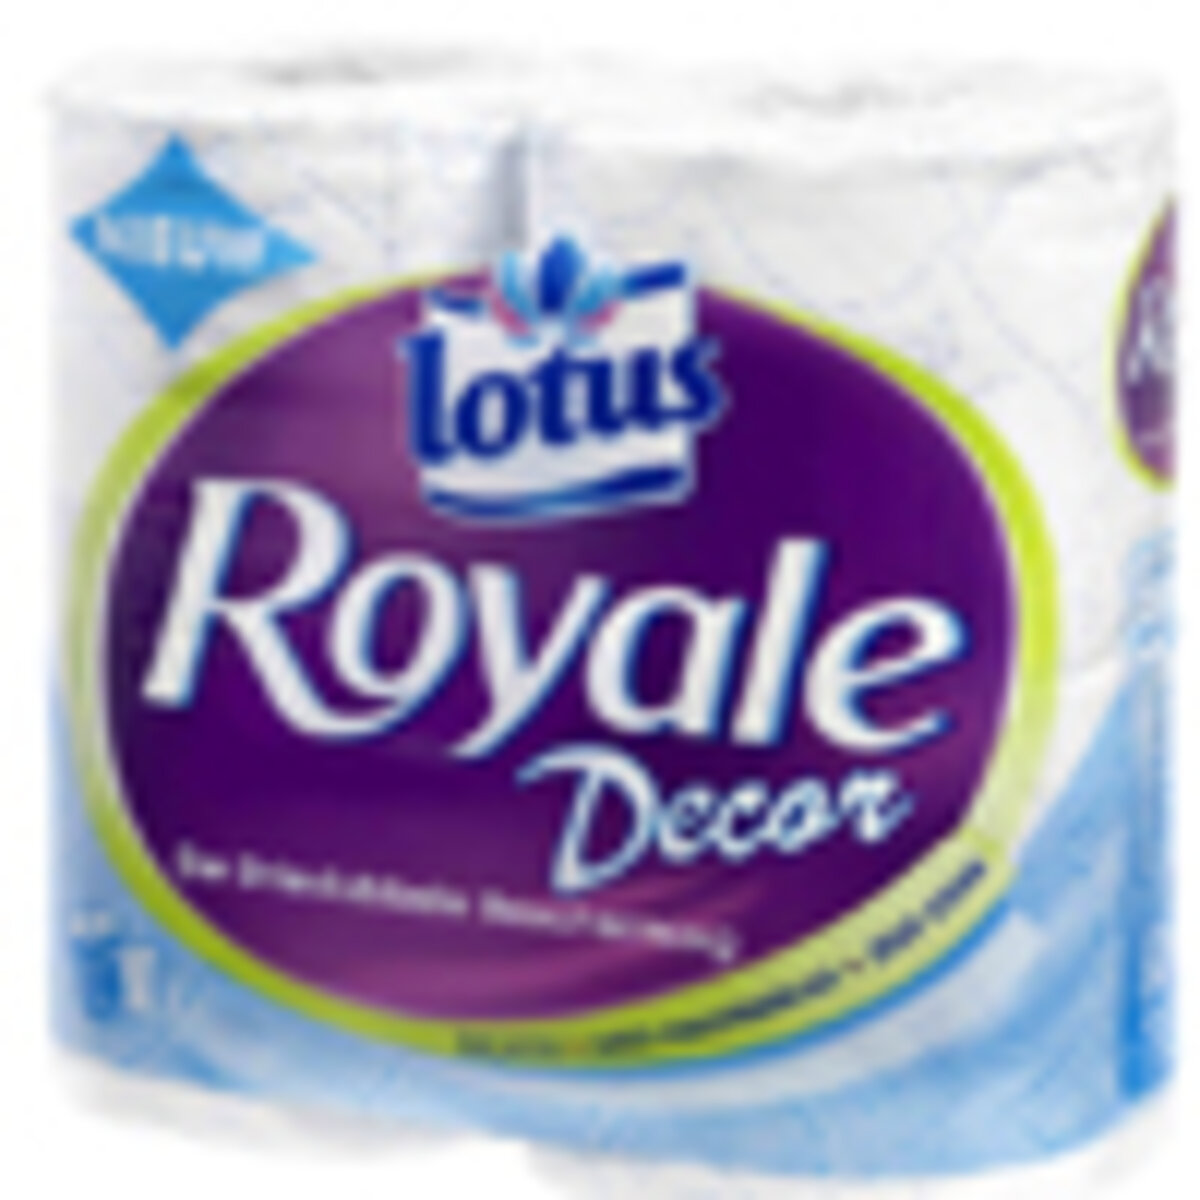 patroon Concurreren inkt Lotus Royale toiletpapier als beste getets door Kassa